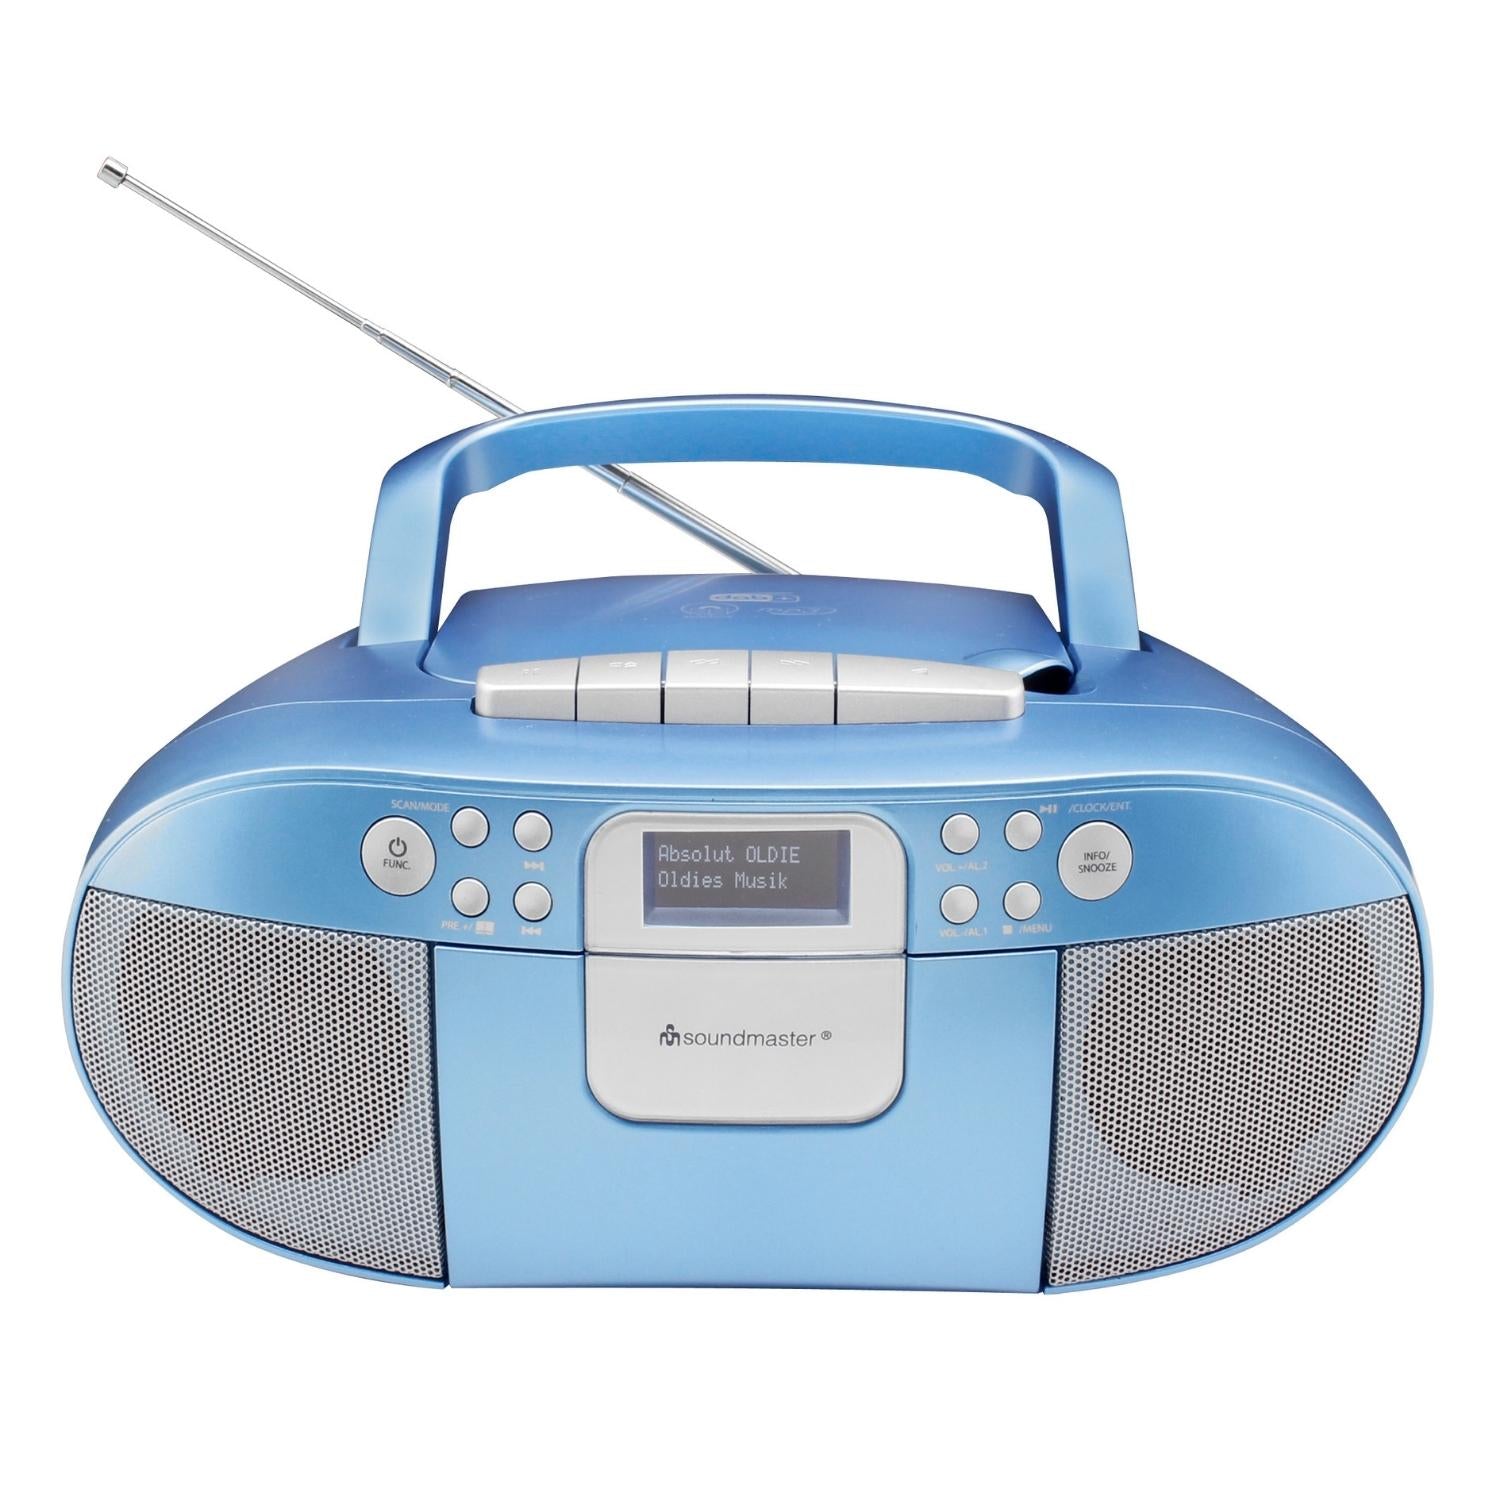 Soundmaster SCD7800BL Boombox DAB+ CD enregistreur cassette MP3 avec fonction réveil USB, fonction livre audio